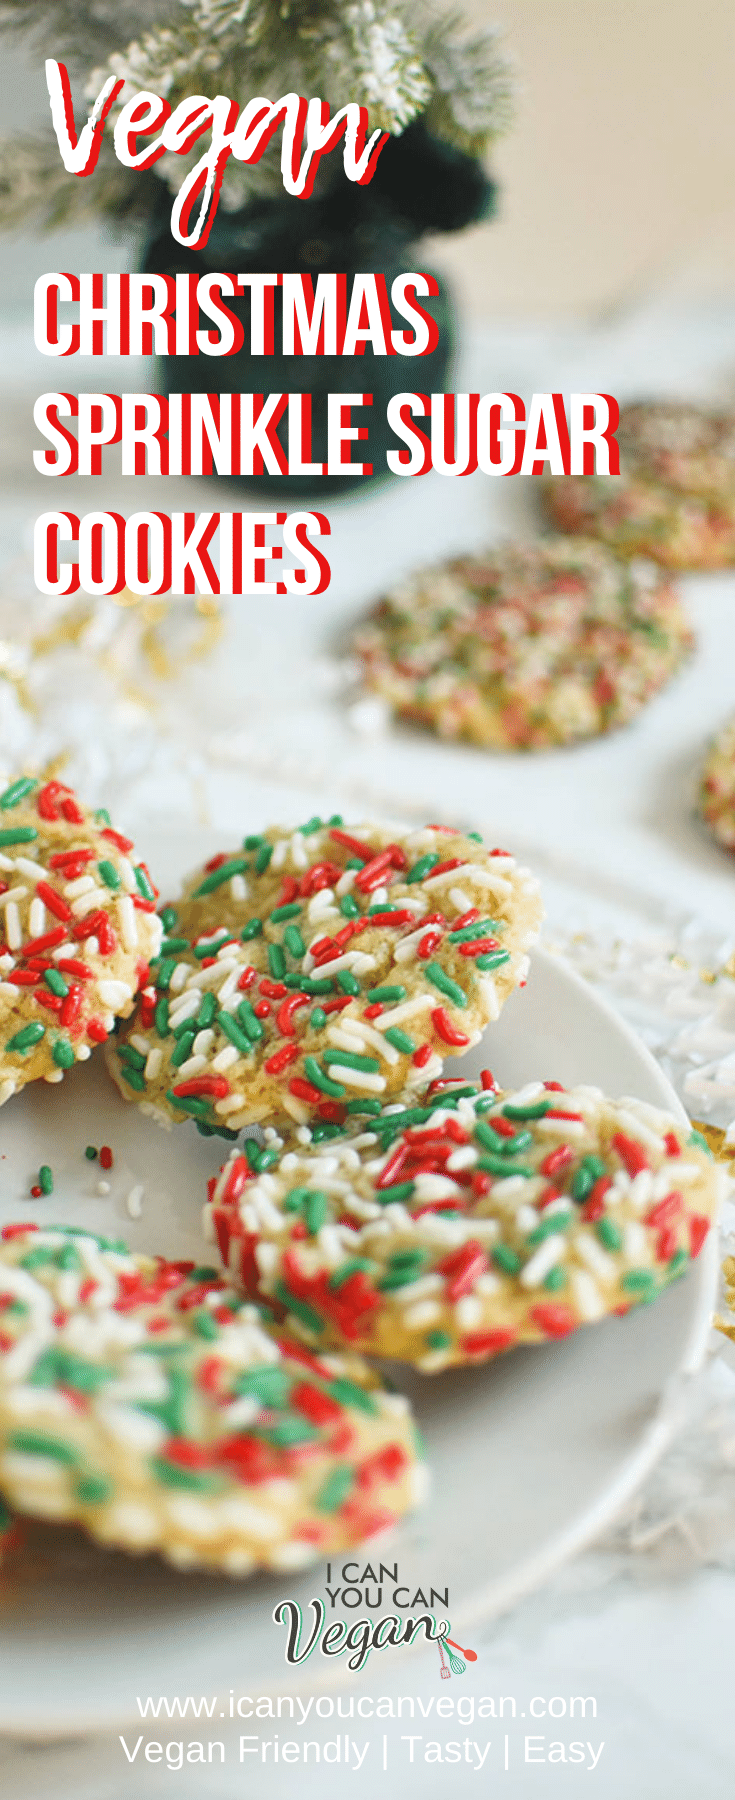 Vegan Christmas Sprinkle Sugar Cookies Pinterest